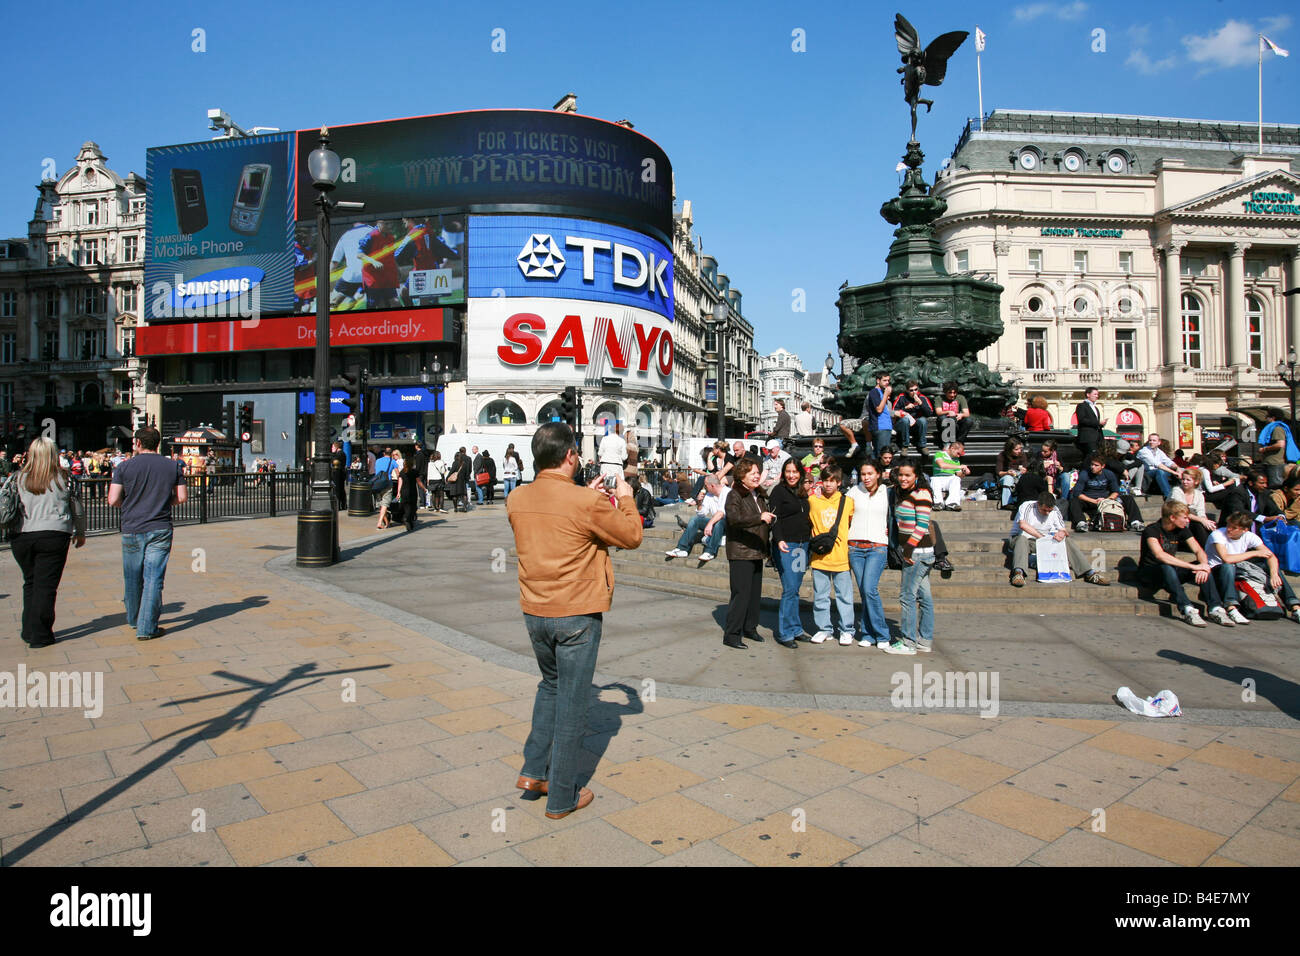 Ausländische Touristen Snapshot Urlaub Foto der Freunde unter Eros-Statue in Piccadilly Circus London Wahrzeichen Attraktion Stockfoto